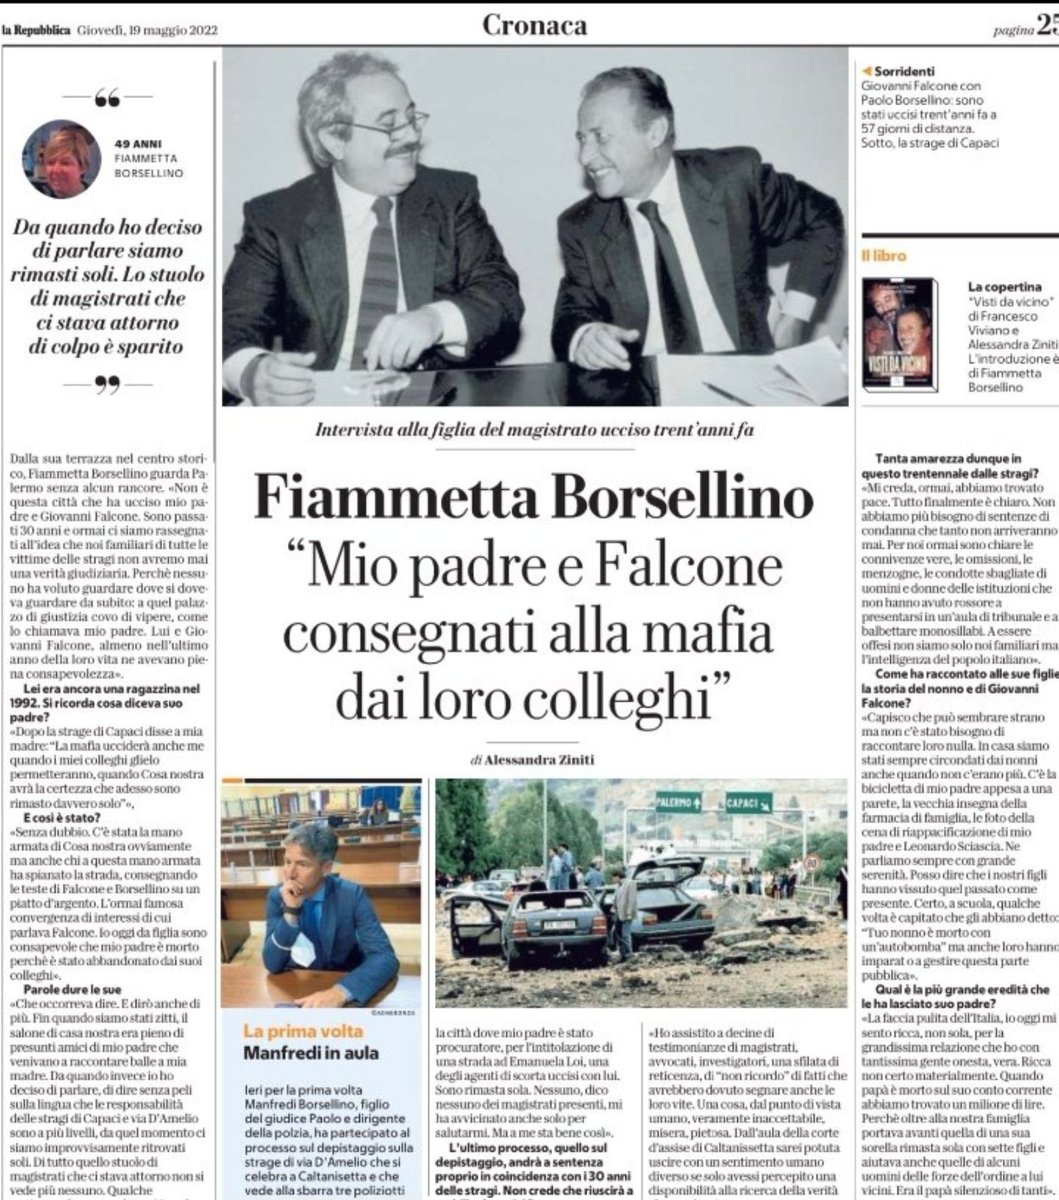 Per SCARPINATO (& Mutolo)        PAOLO #Borsellino #19Luglio